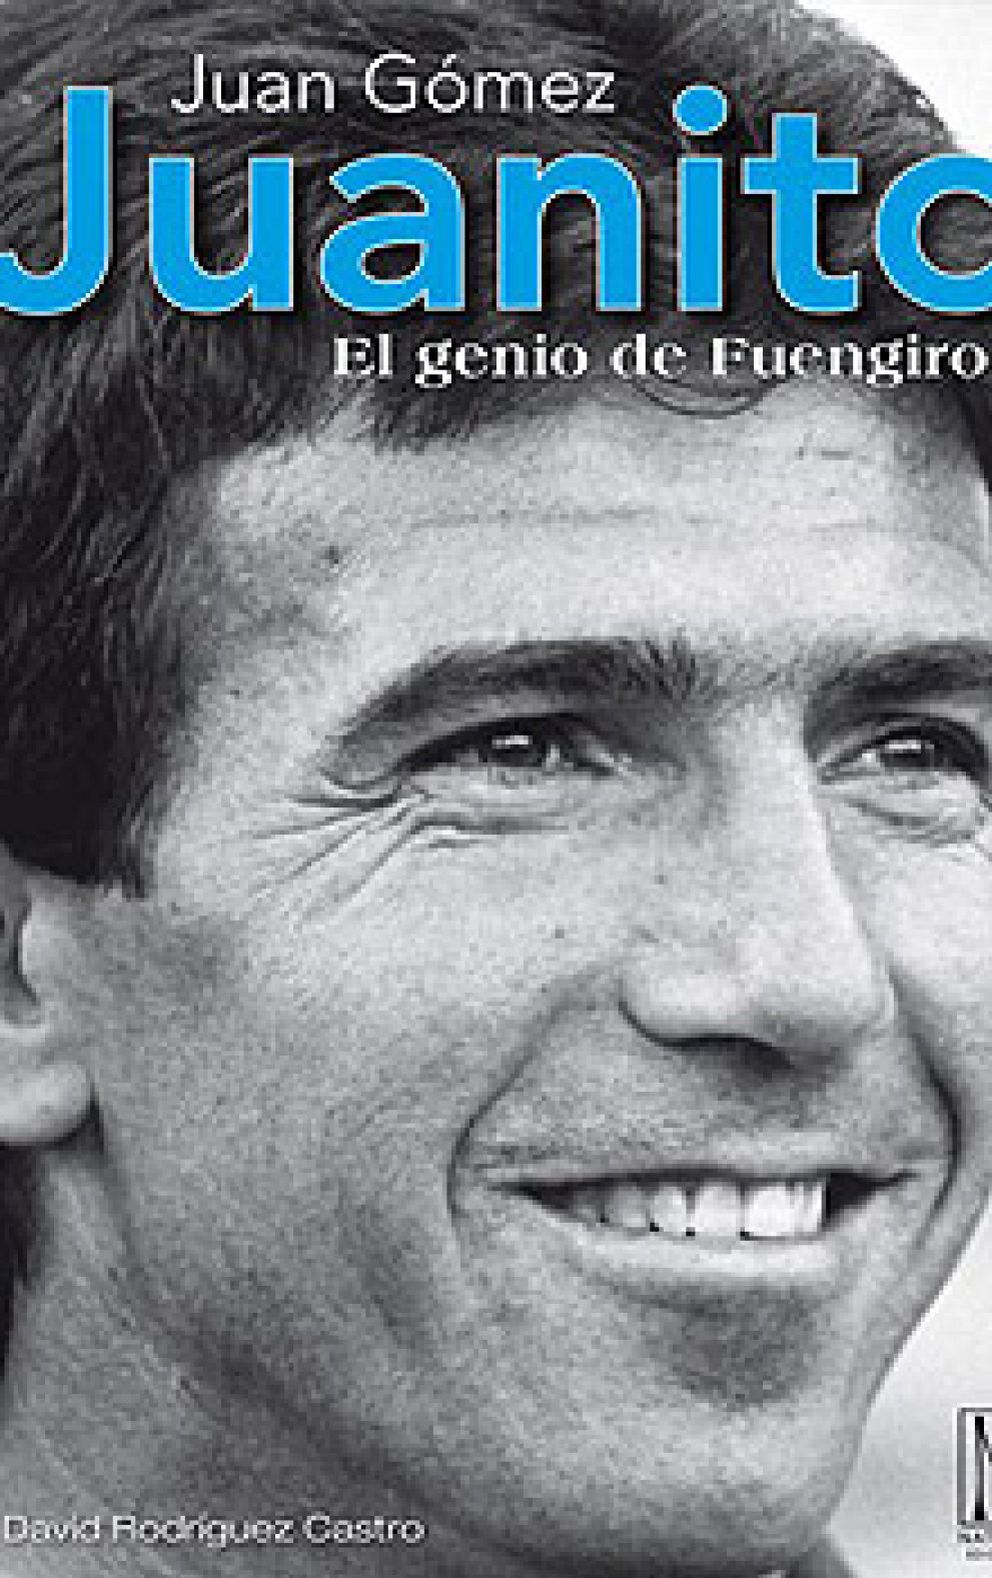 Foto: El espíritu de Juanito llenó el Bernabéu el día que debía haber cumplido 57 años